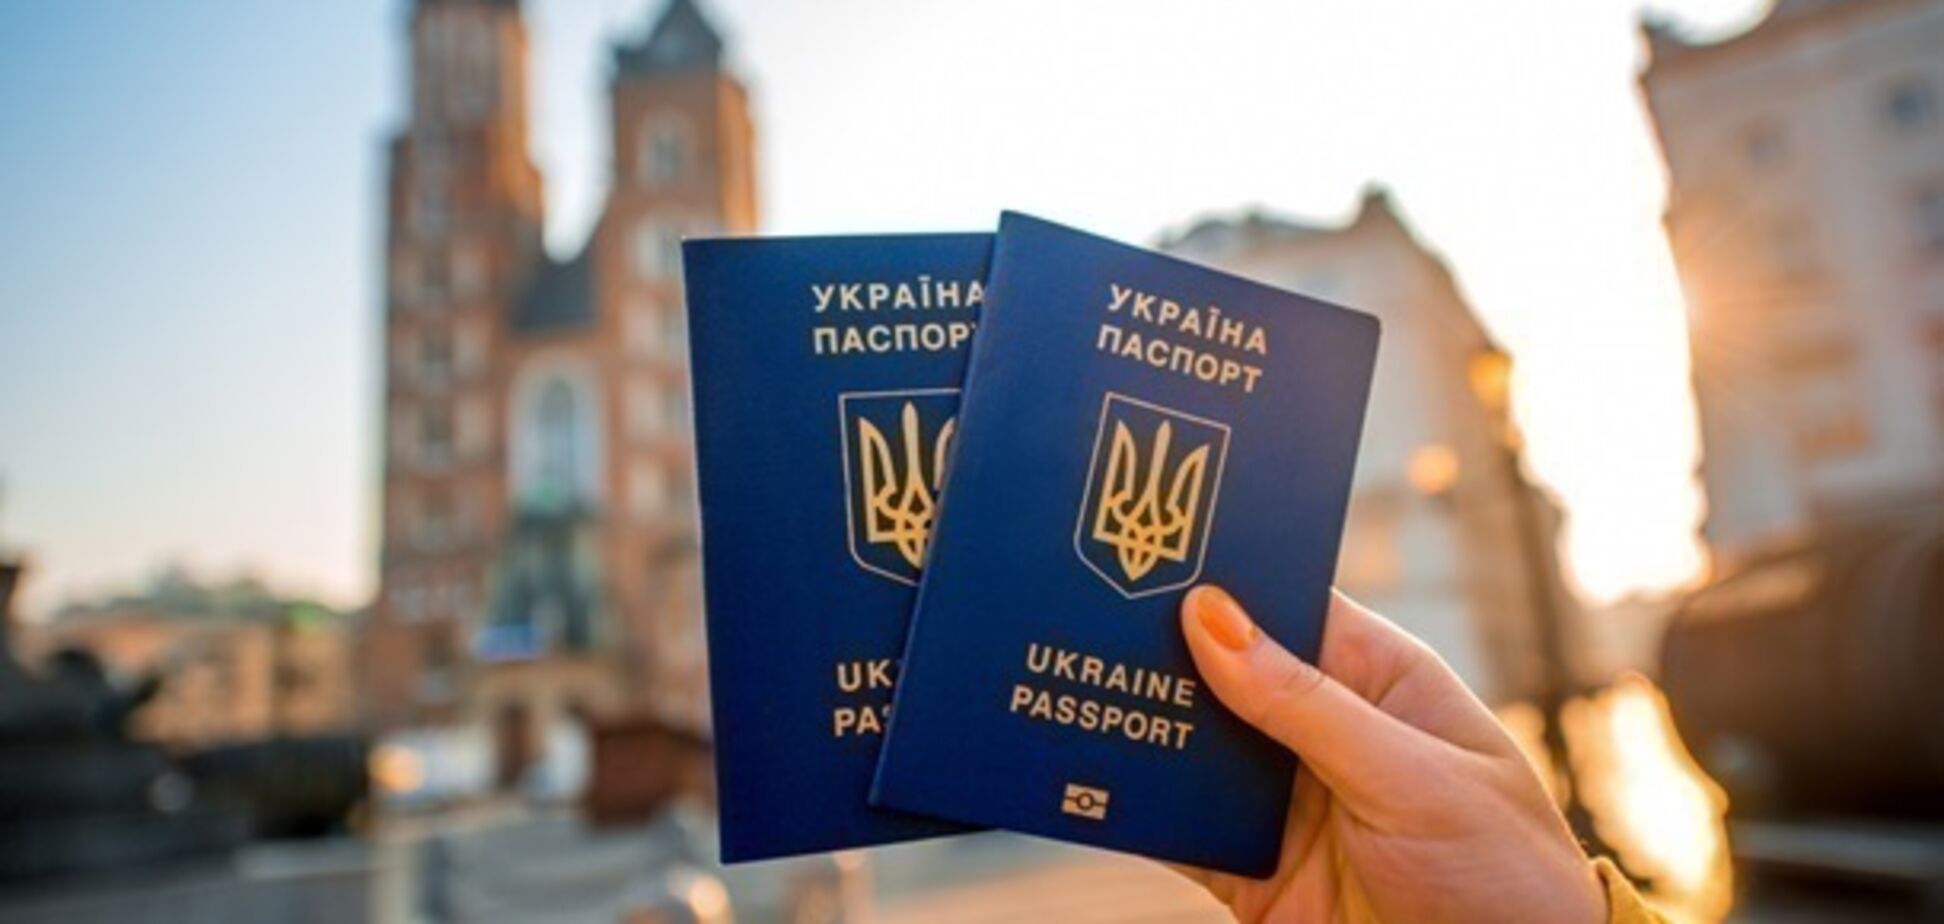 Украина получит безвиз с еще одной страной: что известно